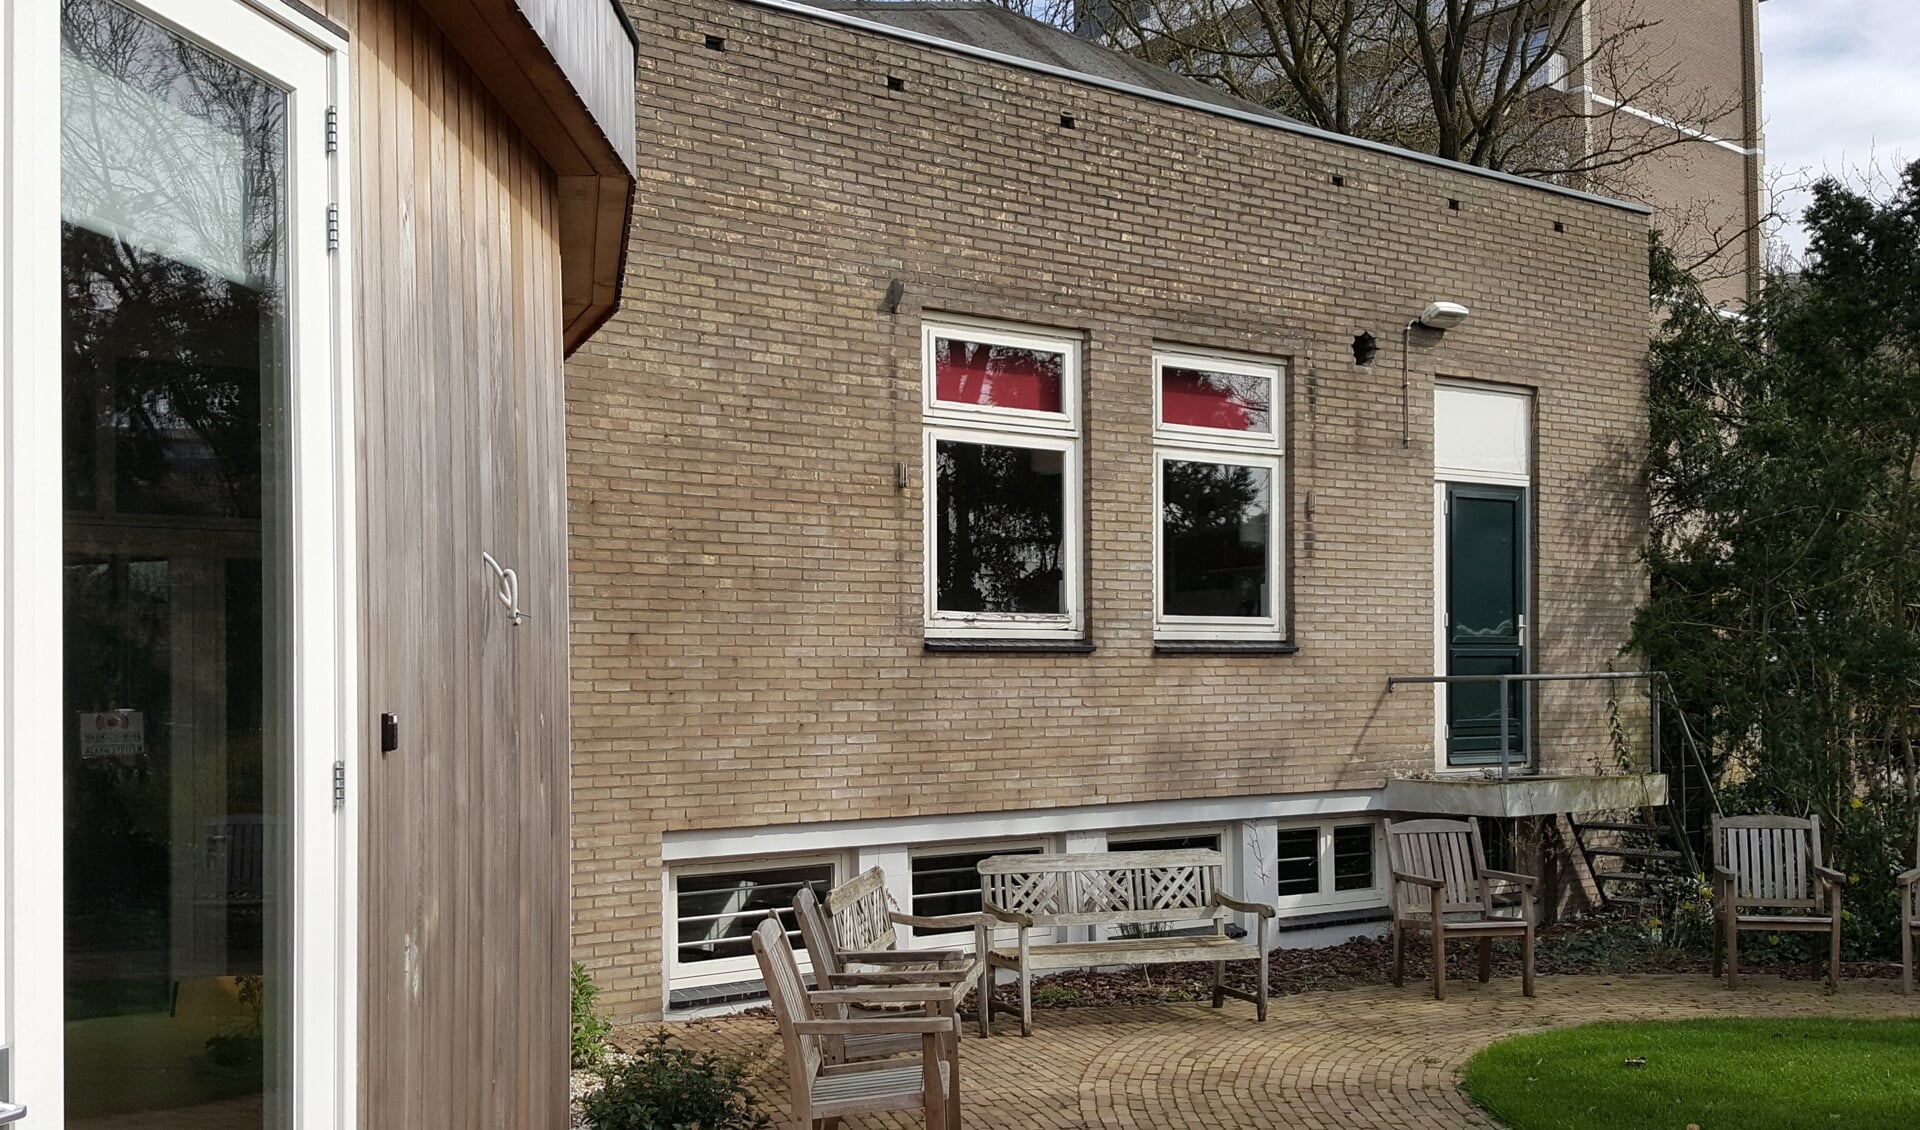 Jongerencentrum De Kelder, Julianalaan 42, Bilthoven, wordt 1 april van 15.00 tot 17.00 uur geopend. Elke zaterdagavond is er vanaf 20.00 uur voor jongeren vanaf 16 jaar een inloop. De locatie bevindt zich in de kelder van de Magneet.